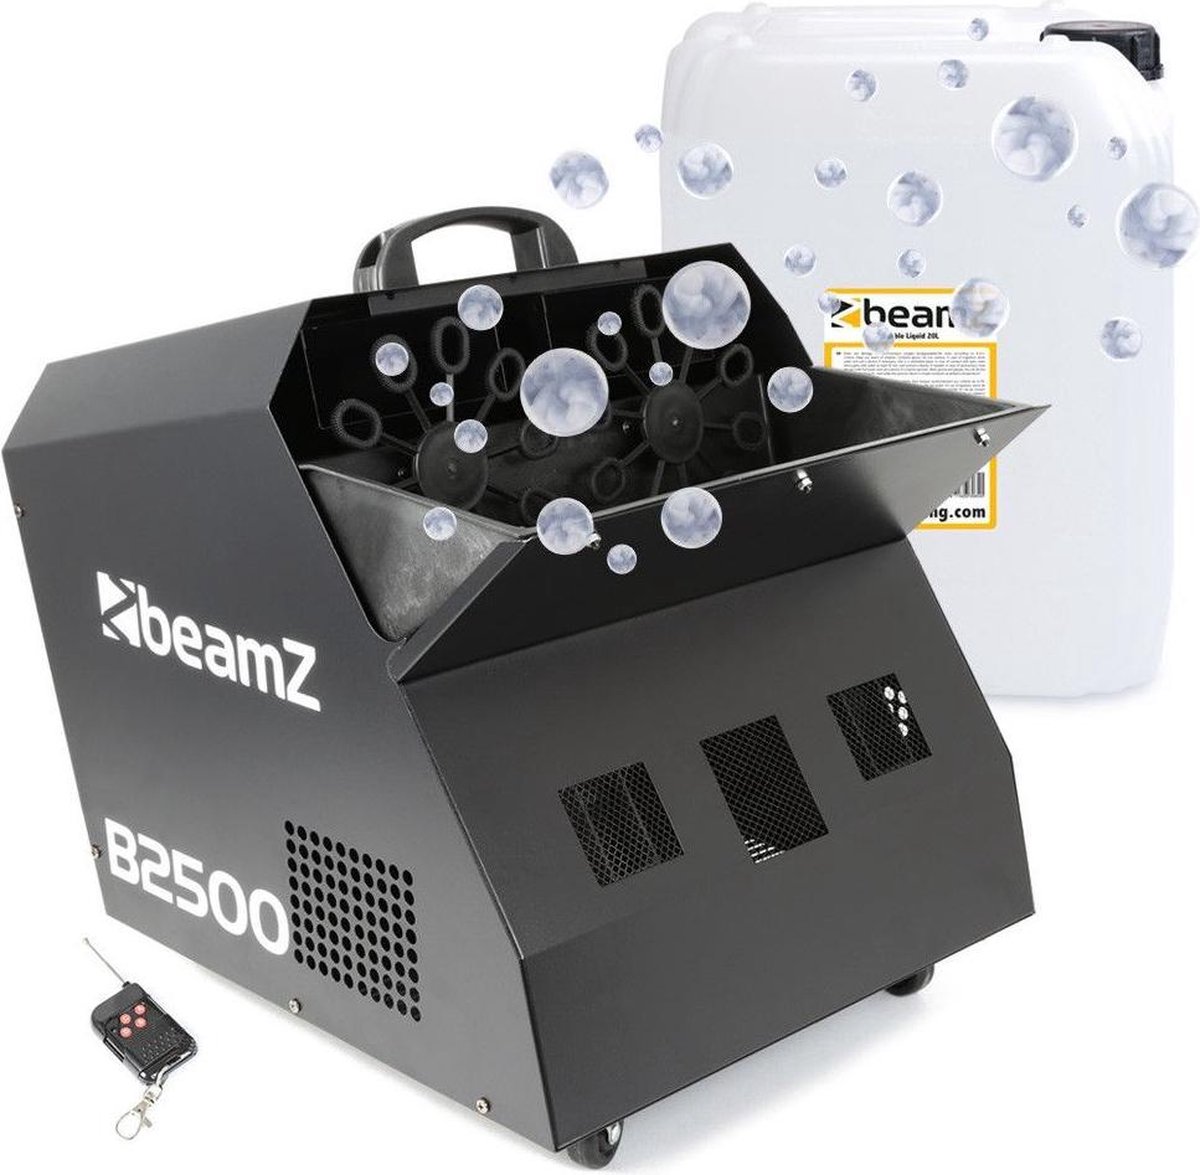 Bellenblaasmachine - Beamz B2500 professionele dubbele bellenblaasmachine met draadloze afstandsbediening en 20 liter vloeistof - 